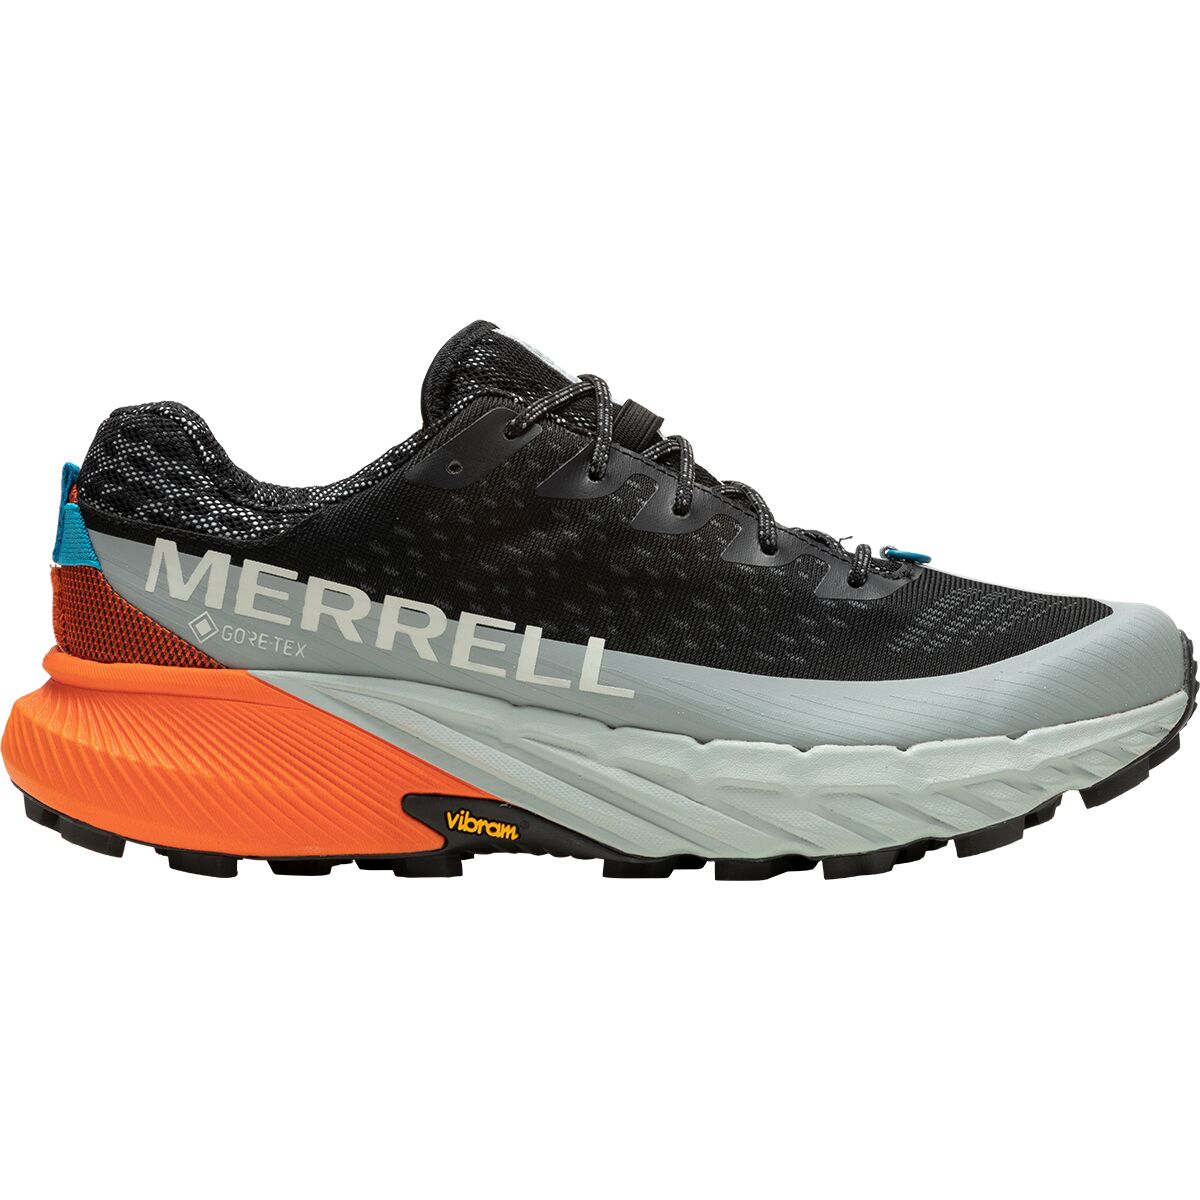 Merrell Agility Peak 5 GTX Shoe - Men's